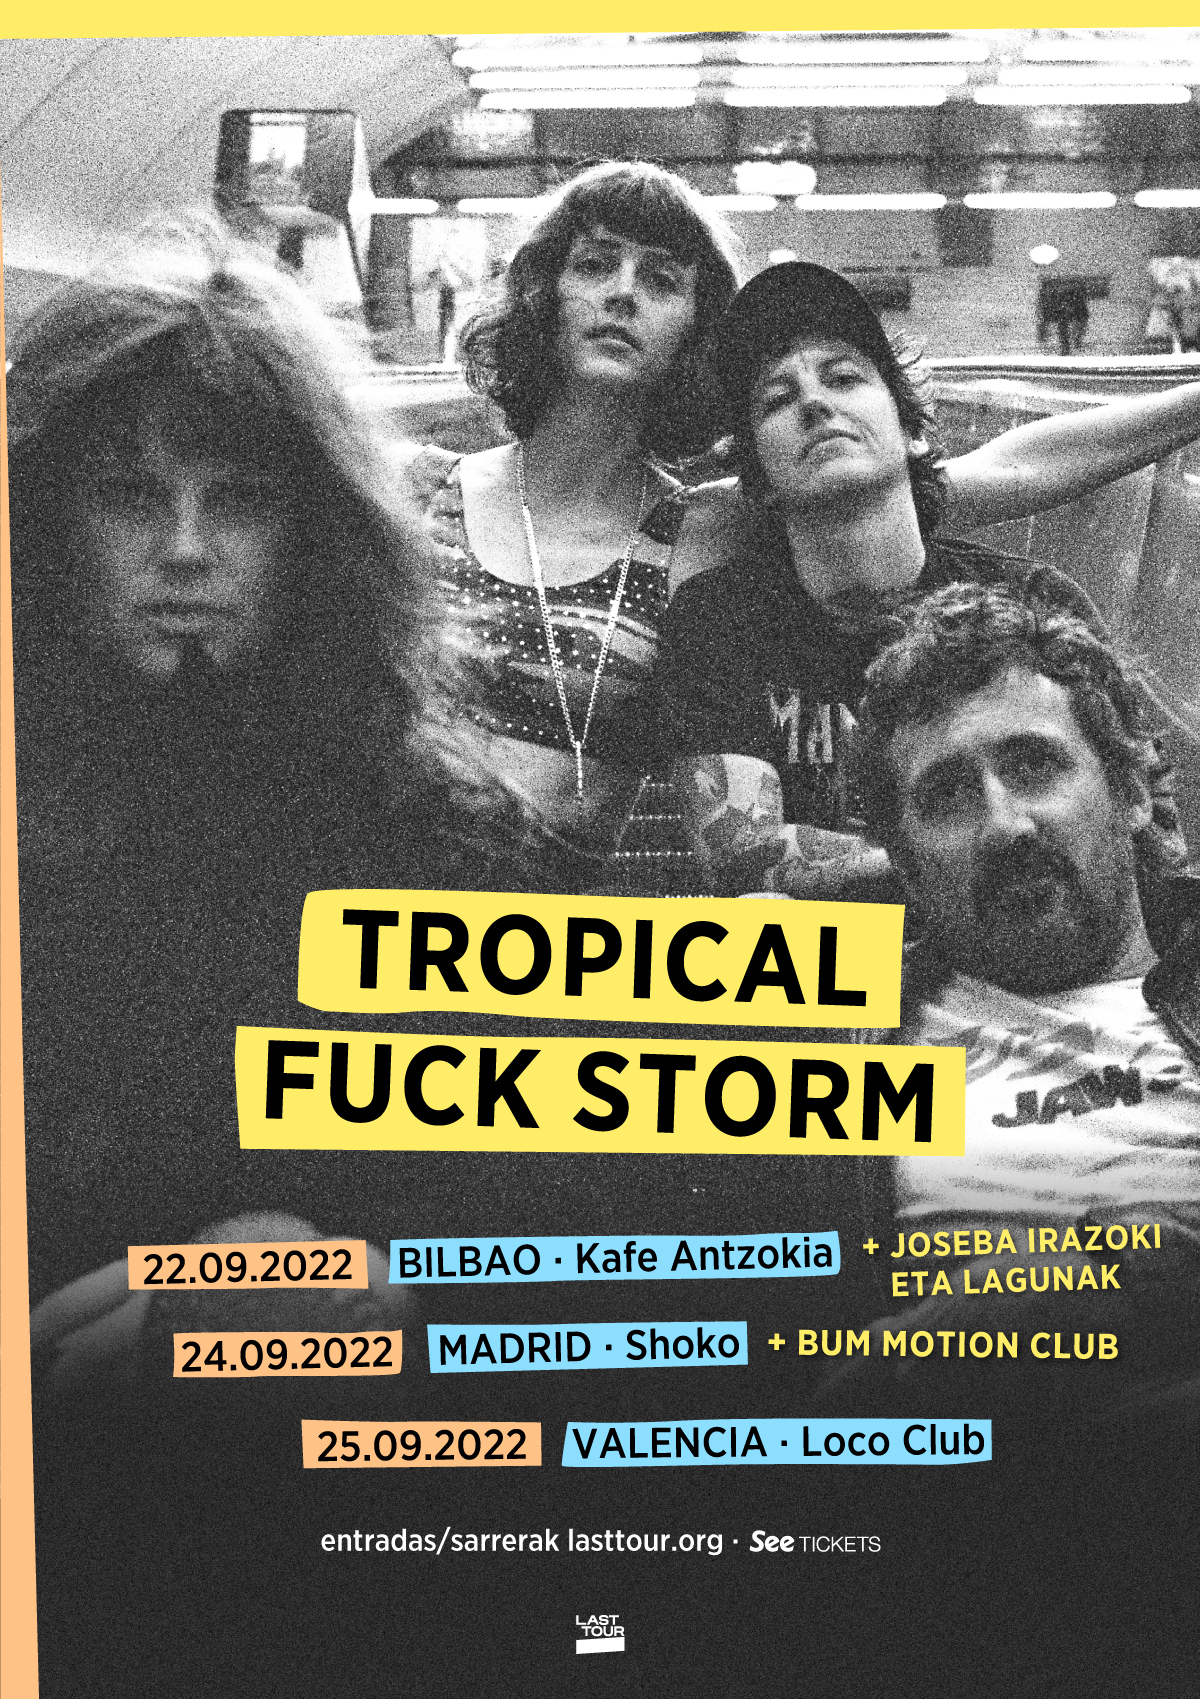 Tropical Fuck Storm actuarán en Bilbao, Madrid y Valencia a final de mes